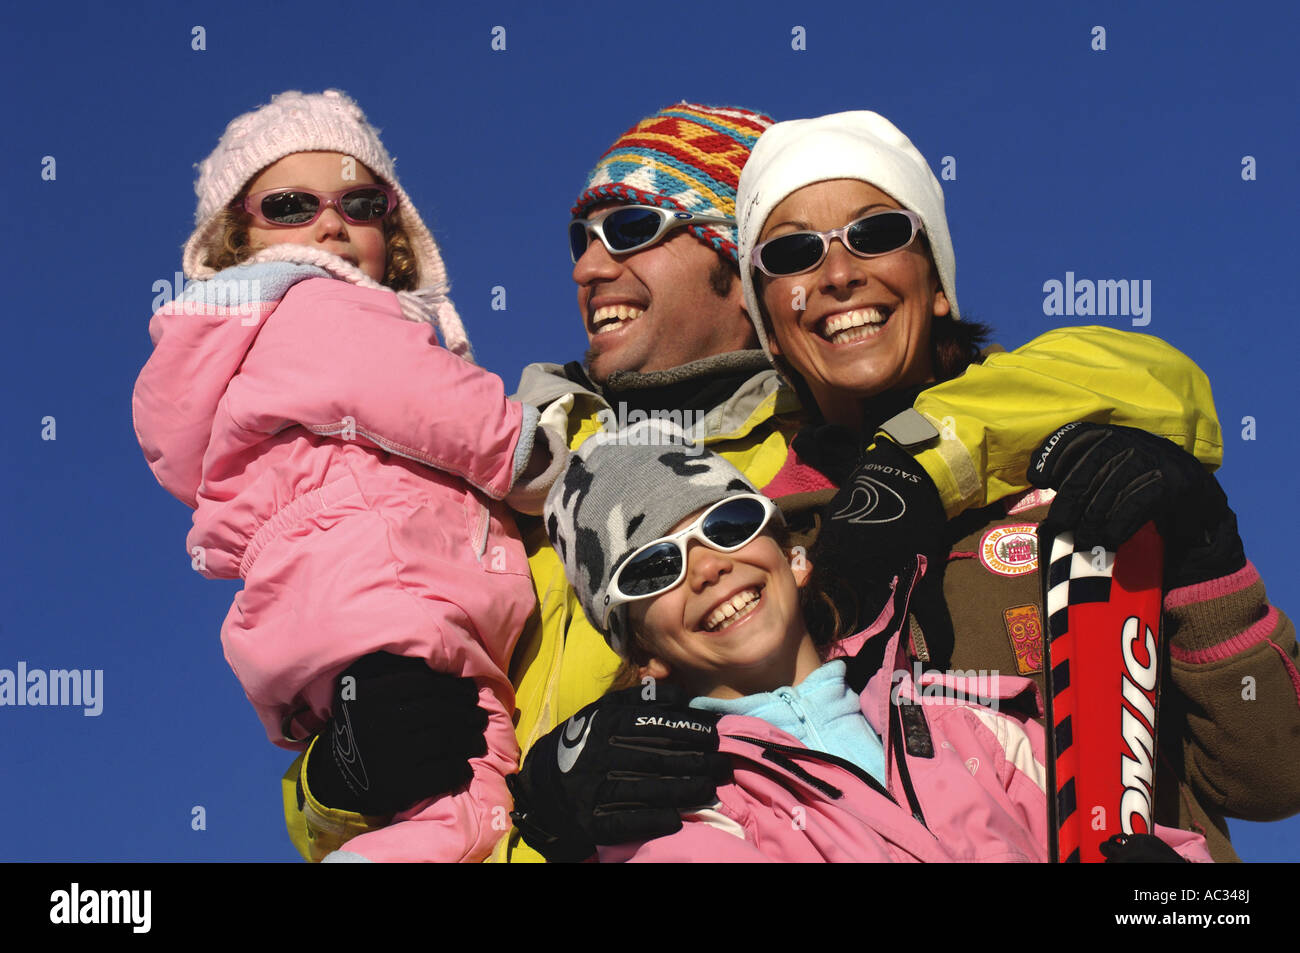 Familia de vacaciones de invierno, Francia, Alps Foto de stock